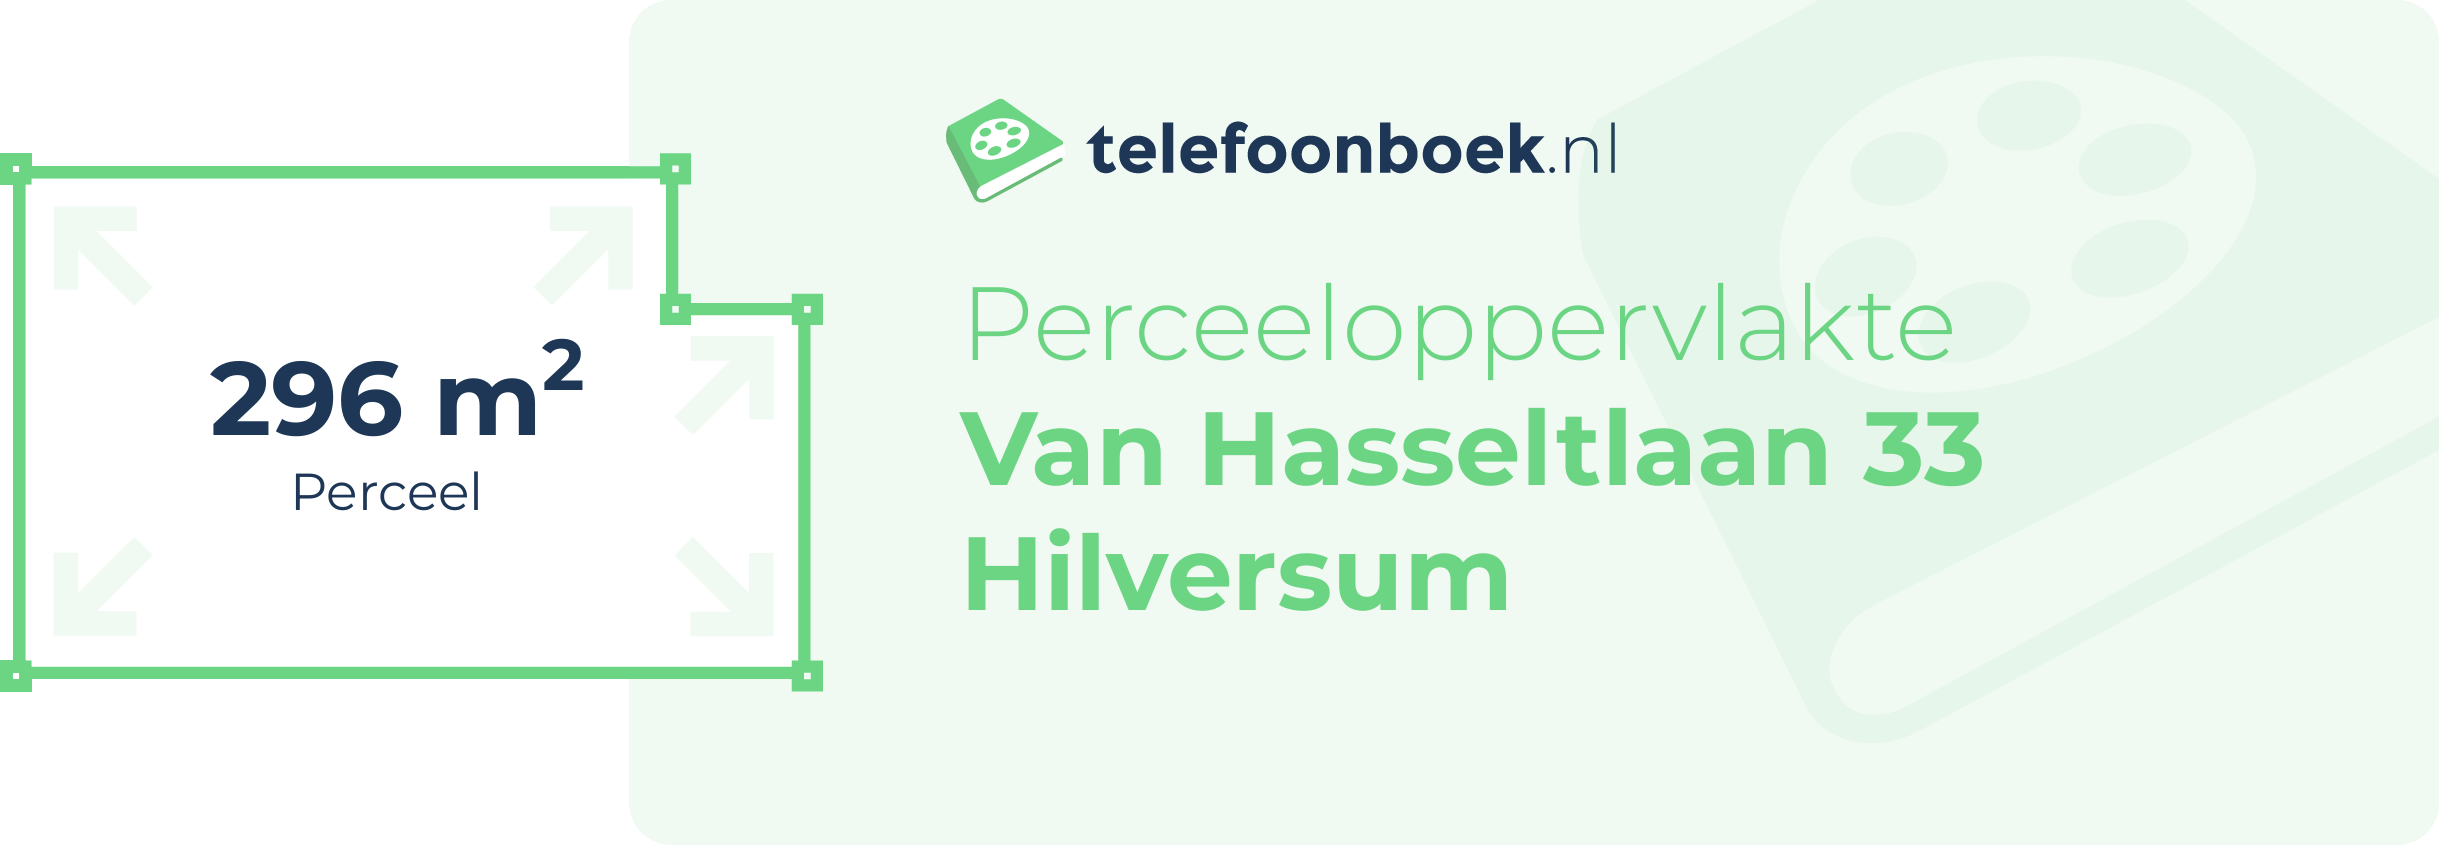 Perceeloppervlakte Van Hasseltlaan 33 Hilversum